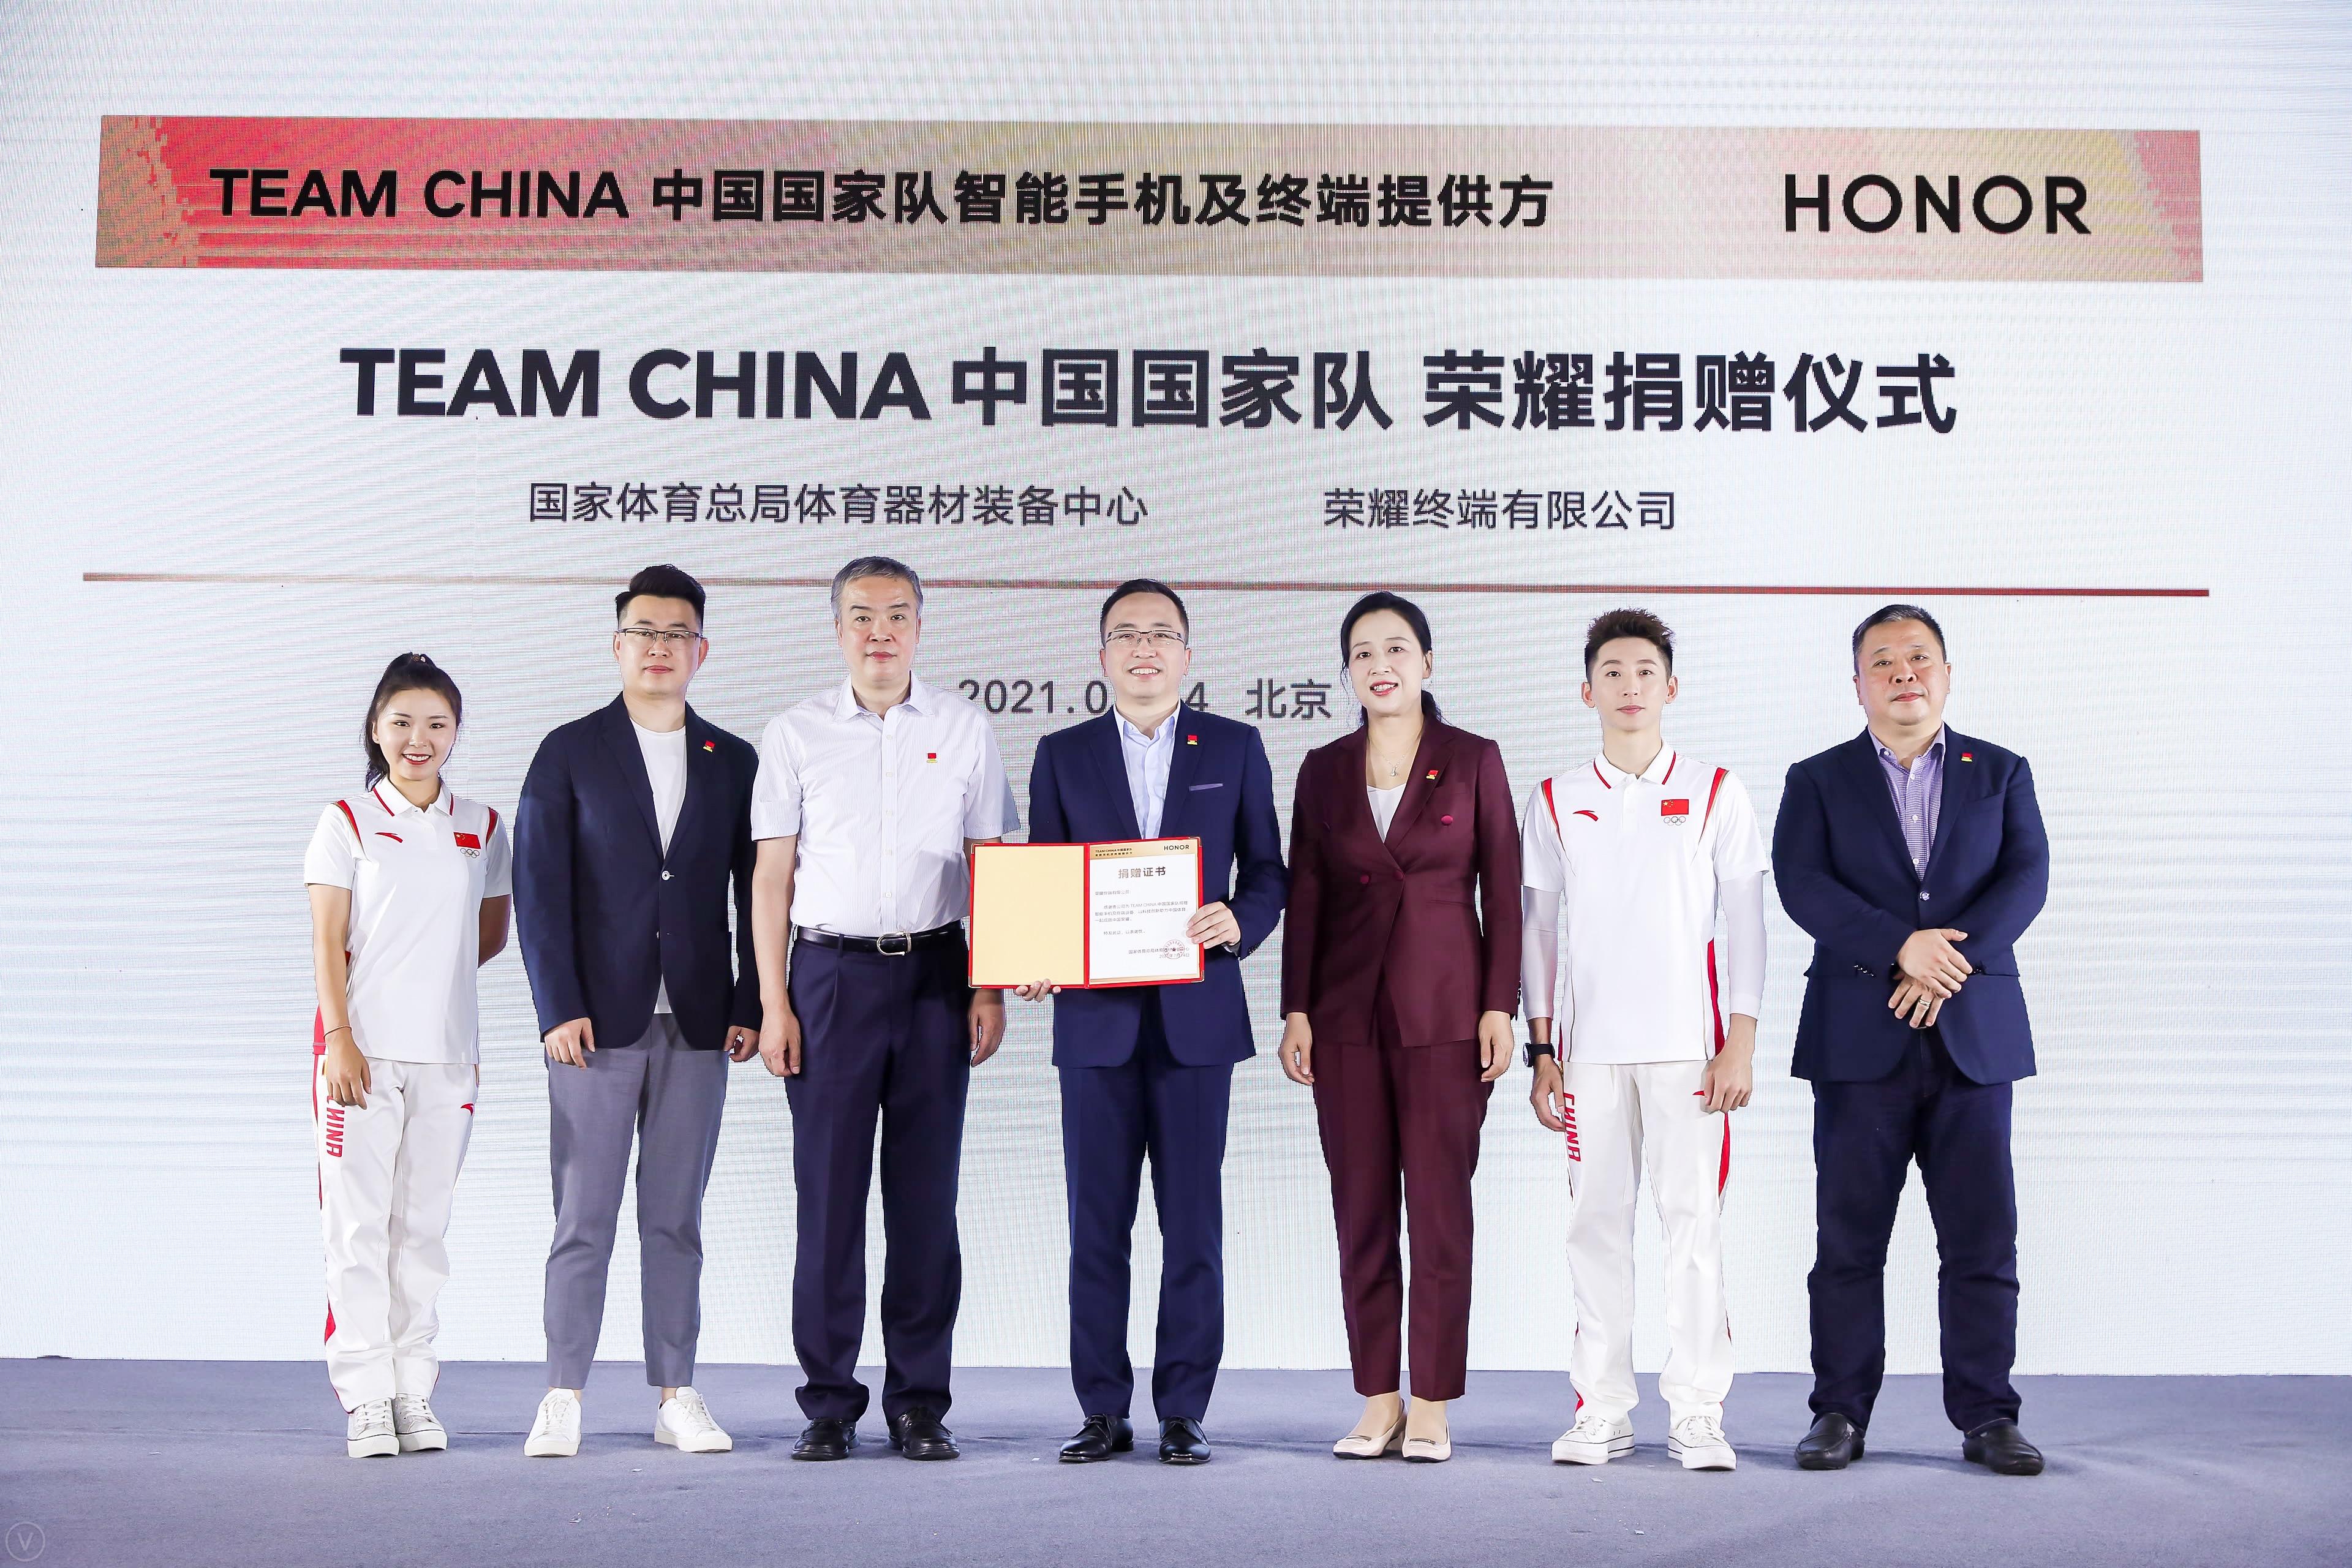 荣耀为TEAM CHINA中国国家队智能手机及终端设备提供方